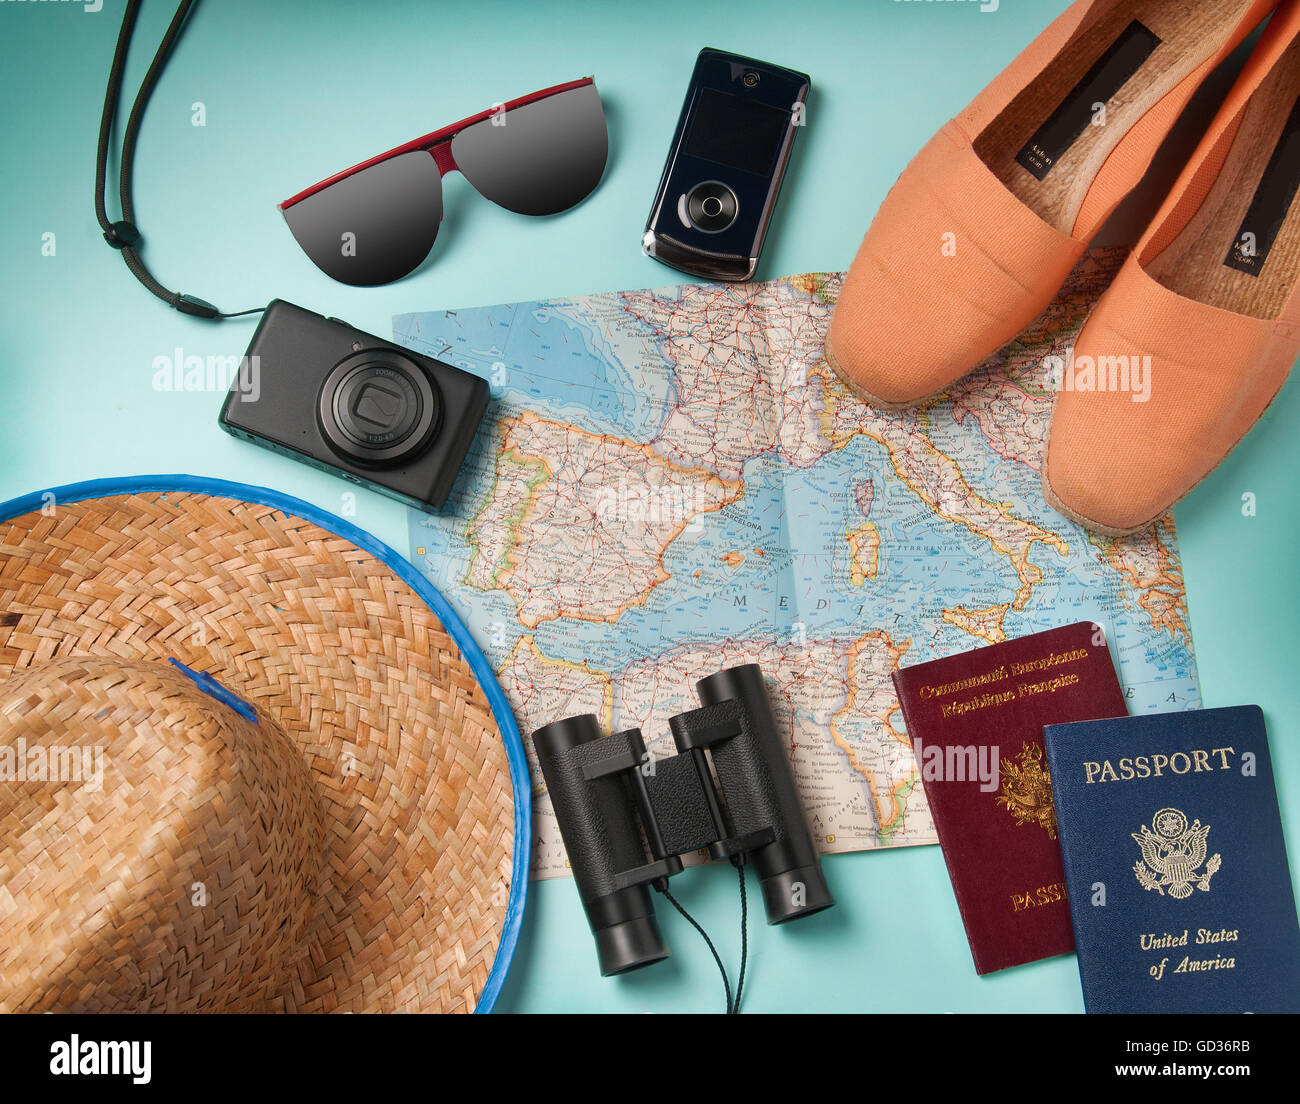 Sommer Urlaub, Tourismus und Objekte Konzept - Nahaufnahme von Kleidung, Kamera, Fernglas, Pässe und Reise-Karte Stockfoto